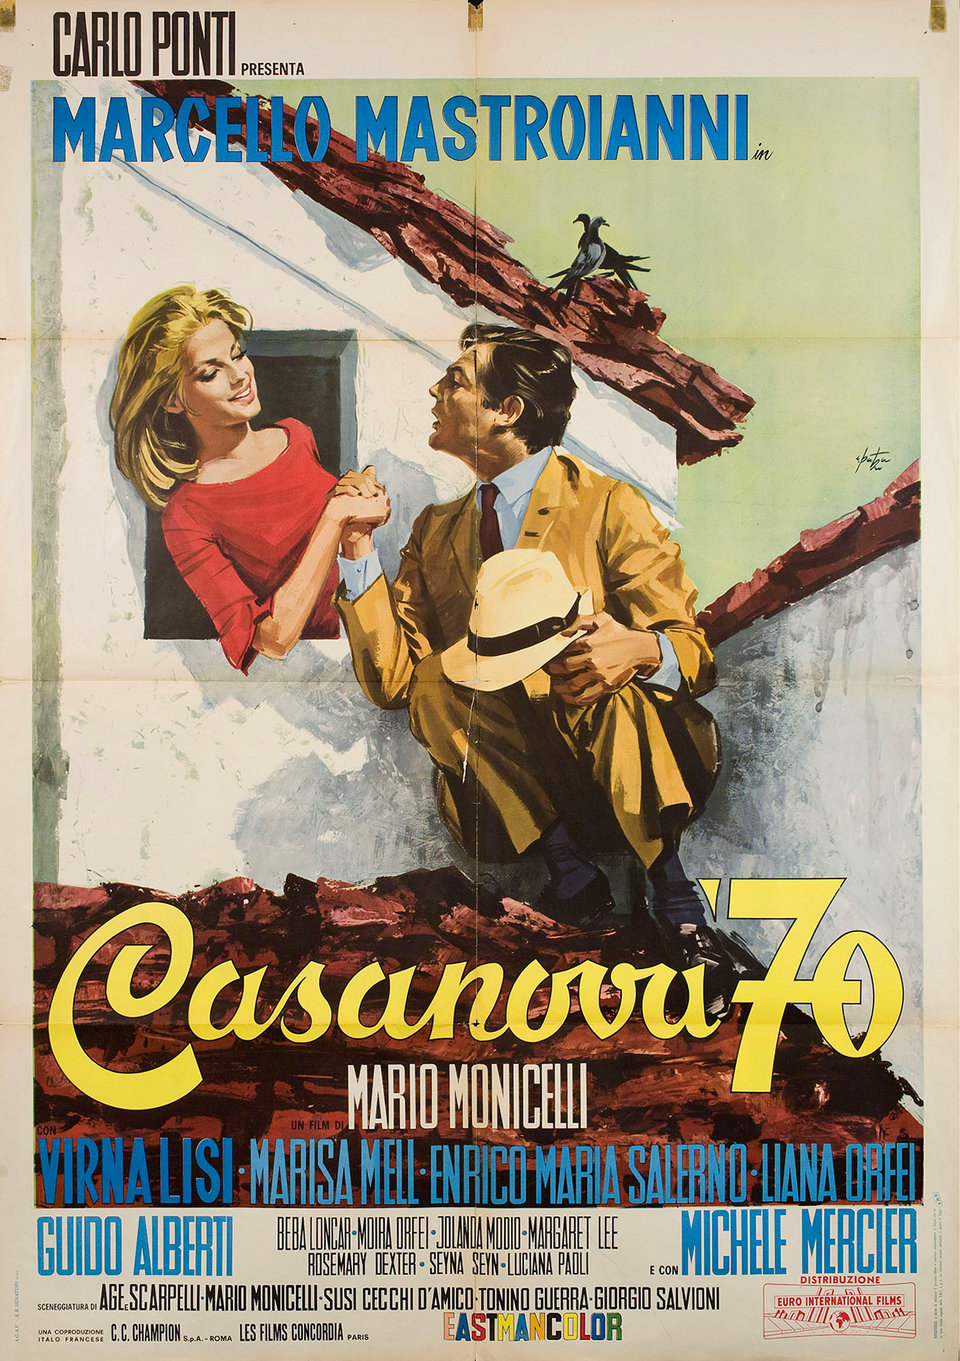 Casanova 70 (1965) Screenshot 1 